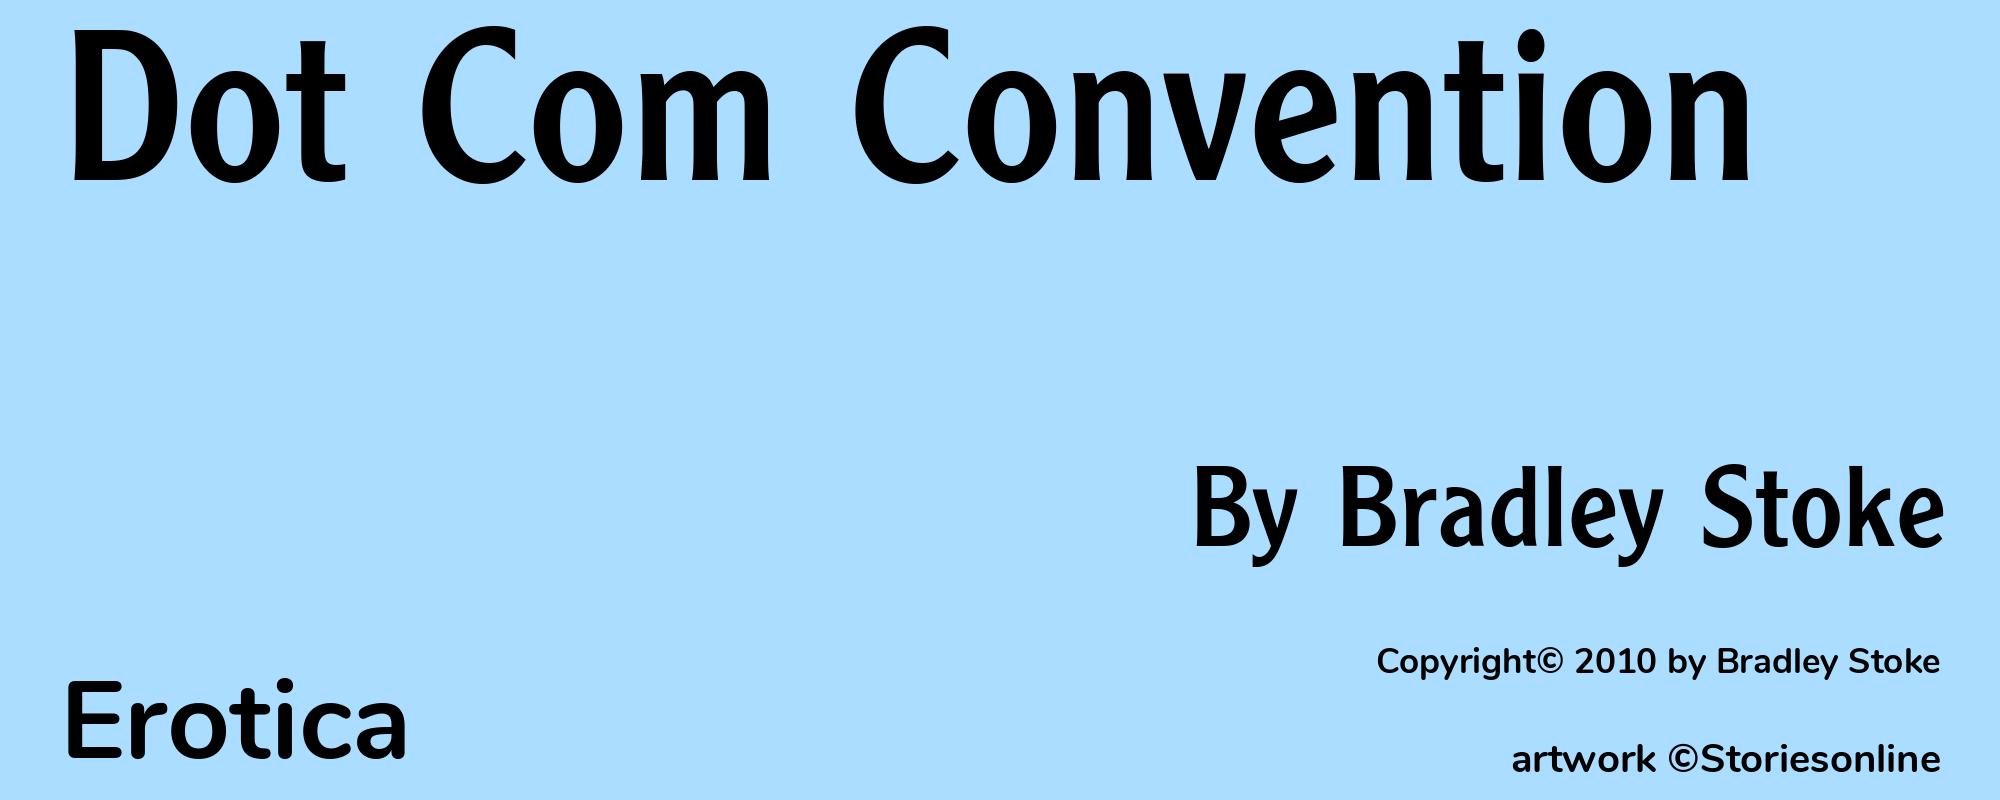 Dot Com Convention - Cover